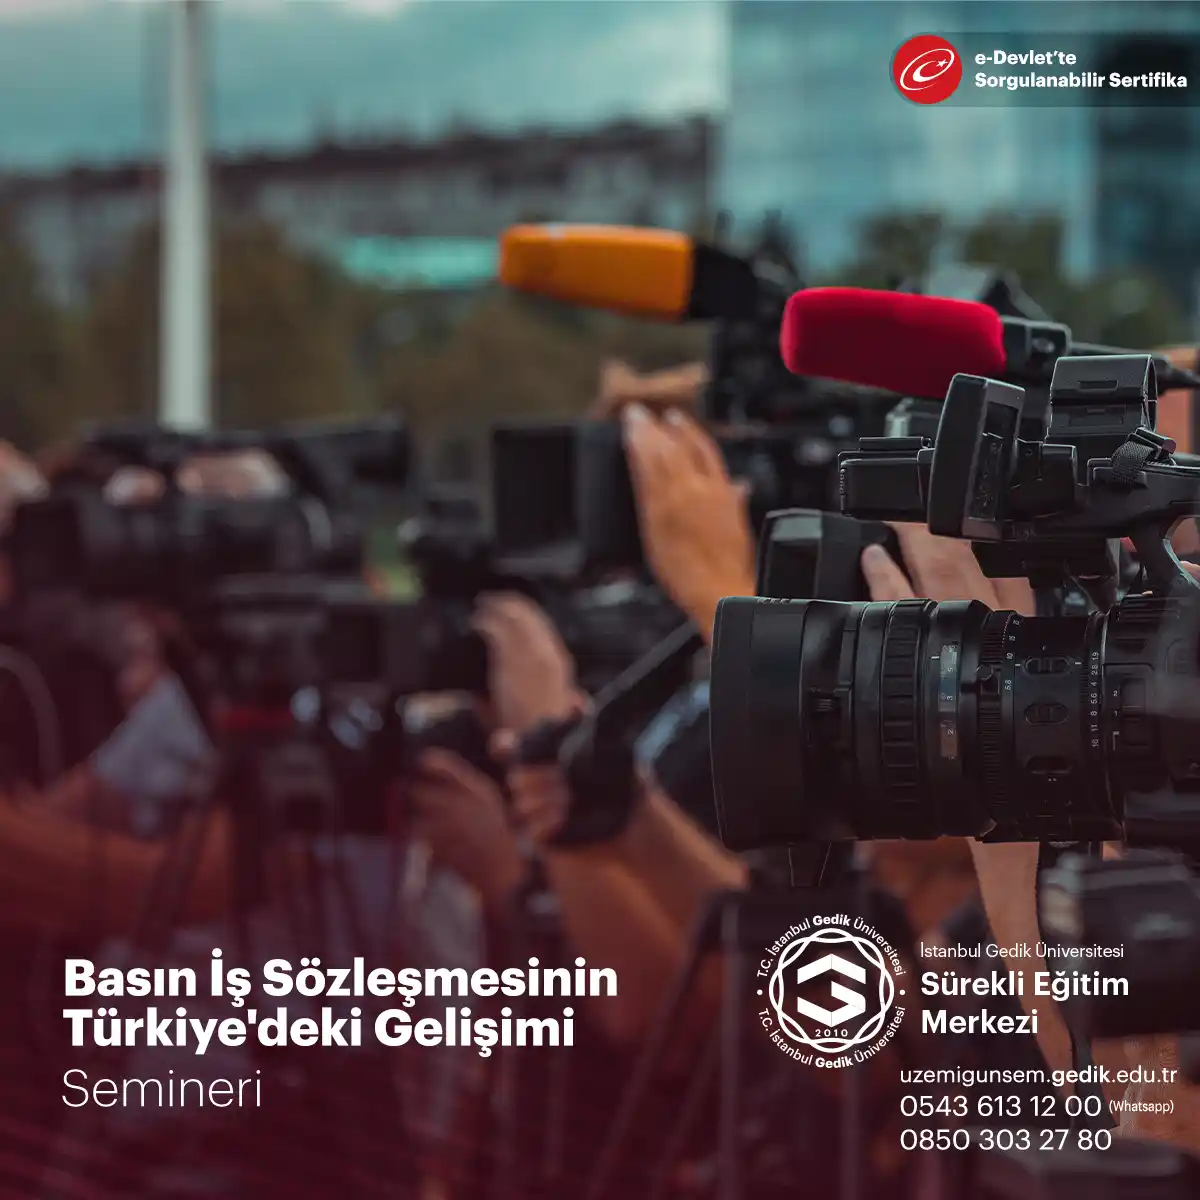 Basın iş sözleşmesinin Türkiye'deki gelişimi, ülkedeki basın özgürlüğü ve gazetecilik mesleğinin yasal çerçevesinin evrimini yansıtır.